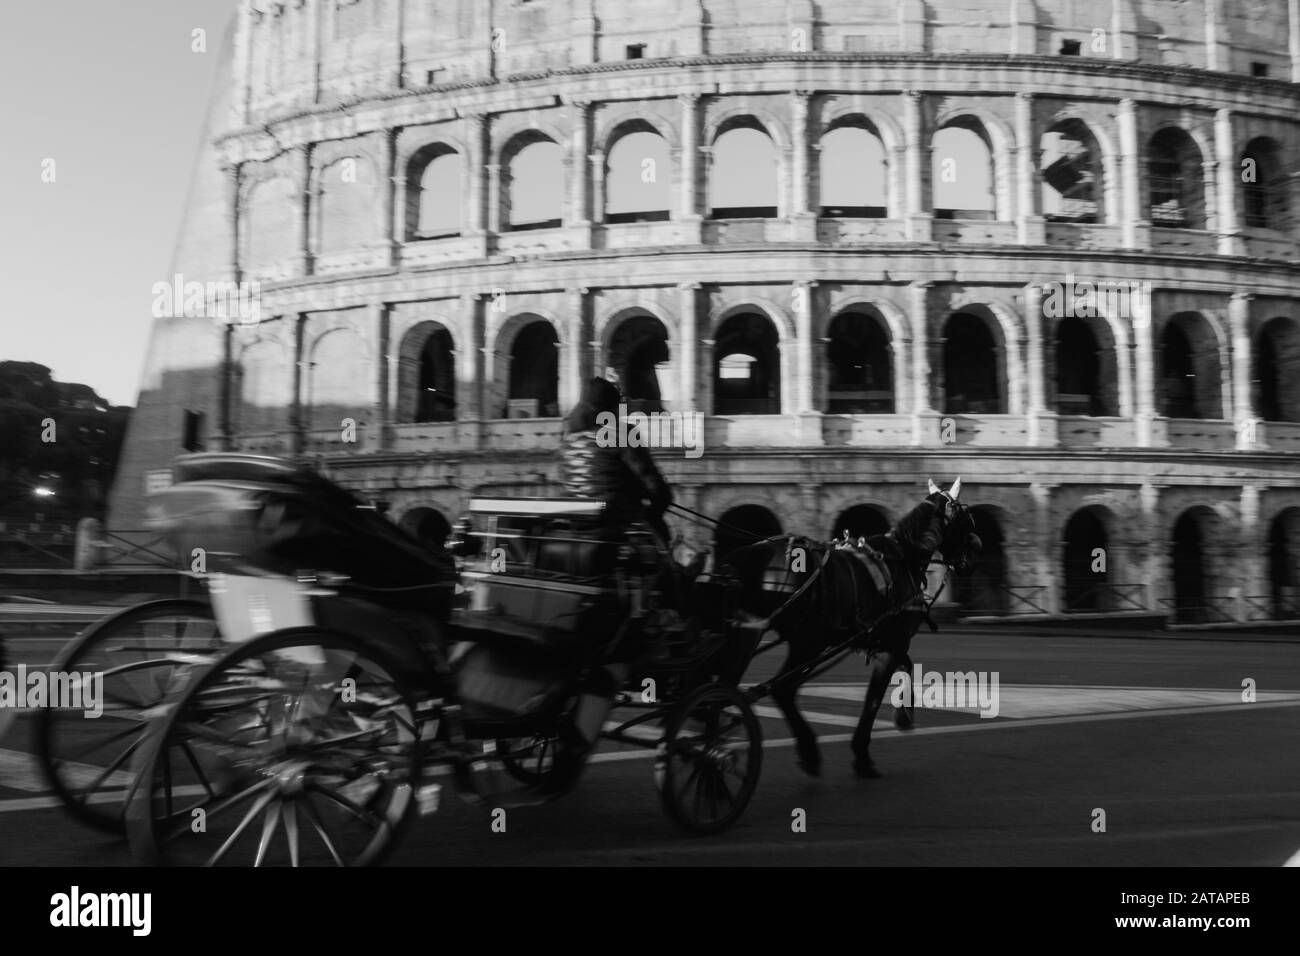 Roma, Italia - 2 gennaio 2020: Immagine offuscata di un cavallo e di un giro in carrozza vicino al Colosseo nel centro di Roma, Italia. Foto Stock